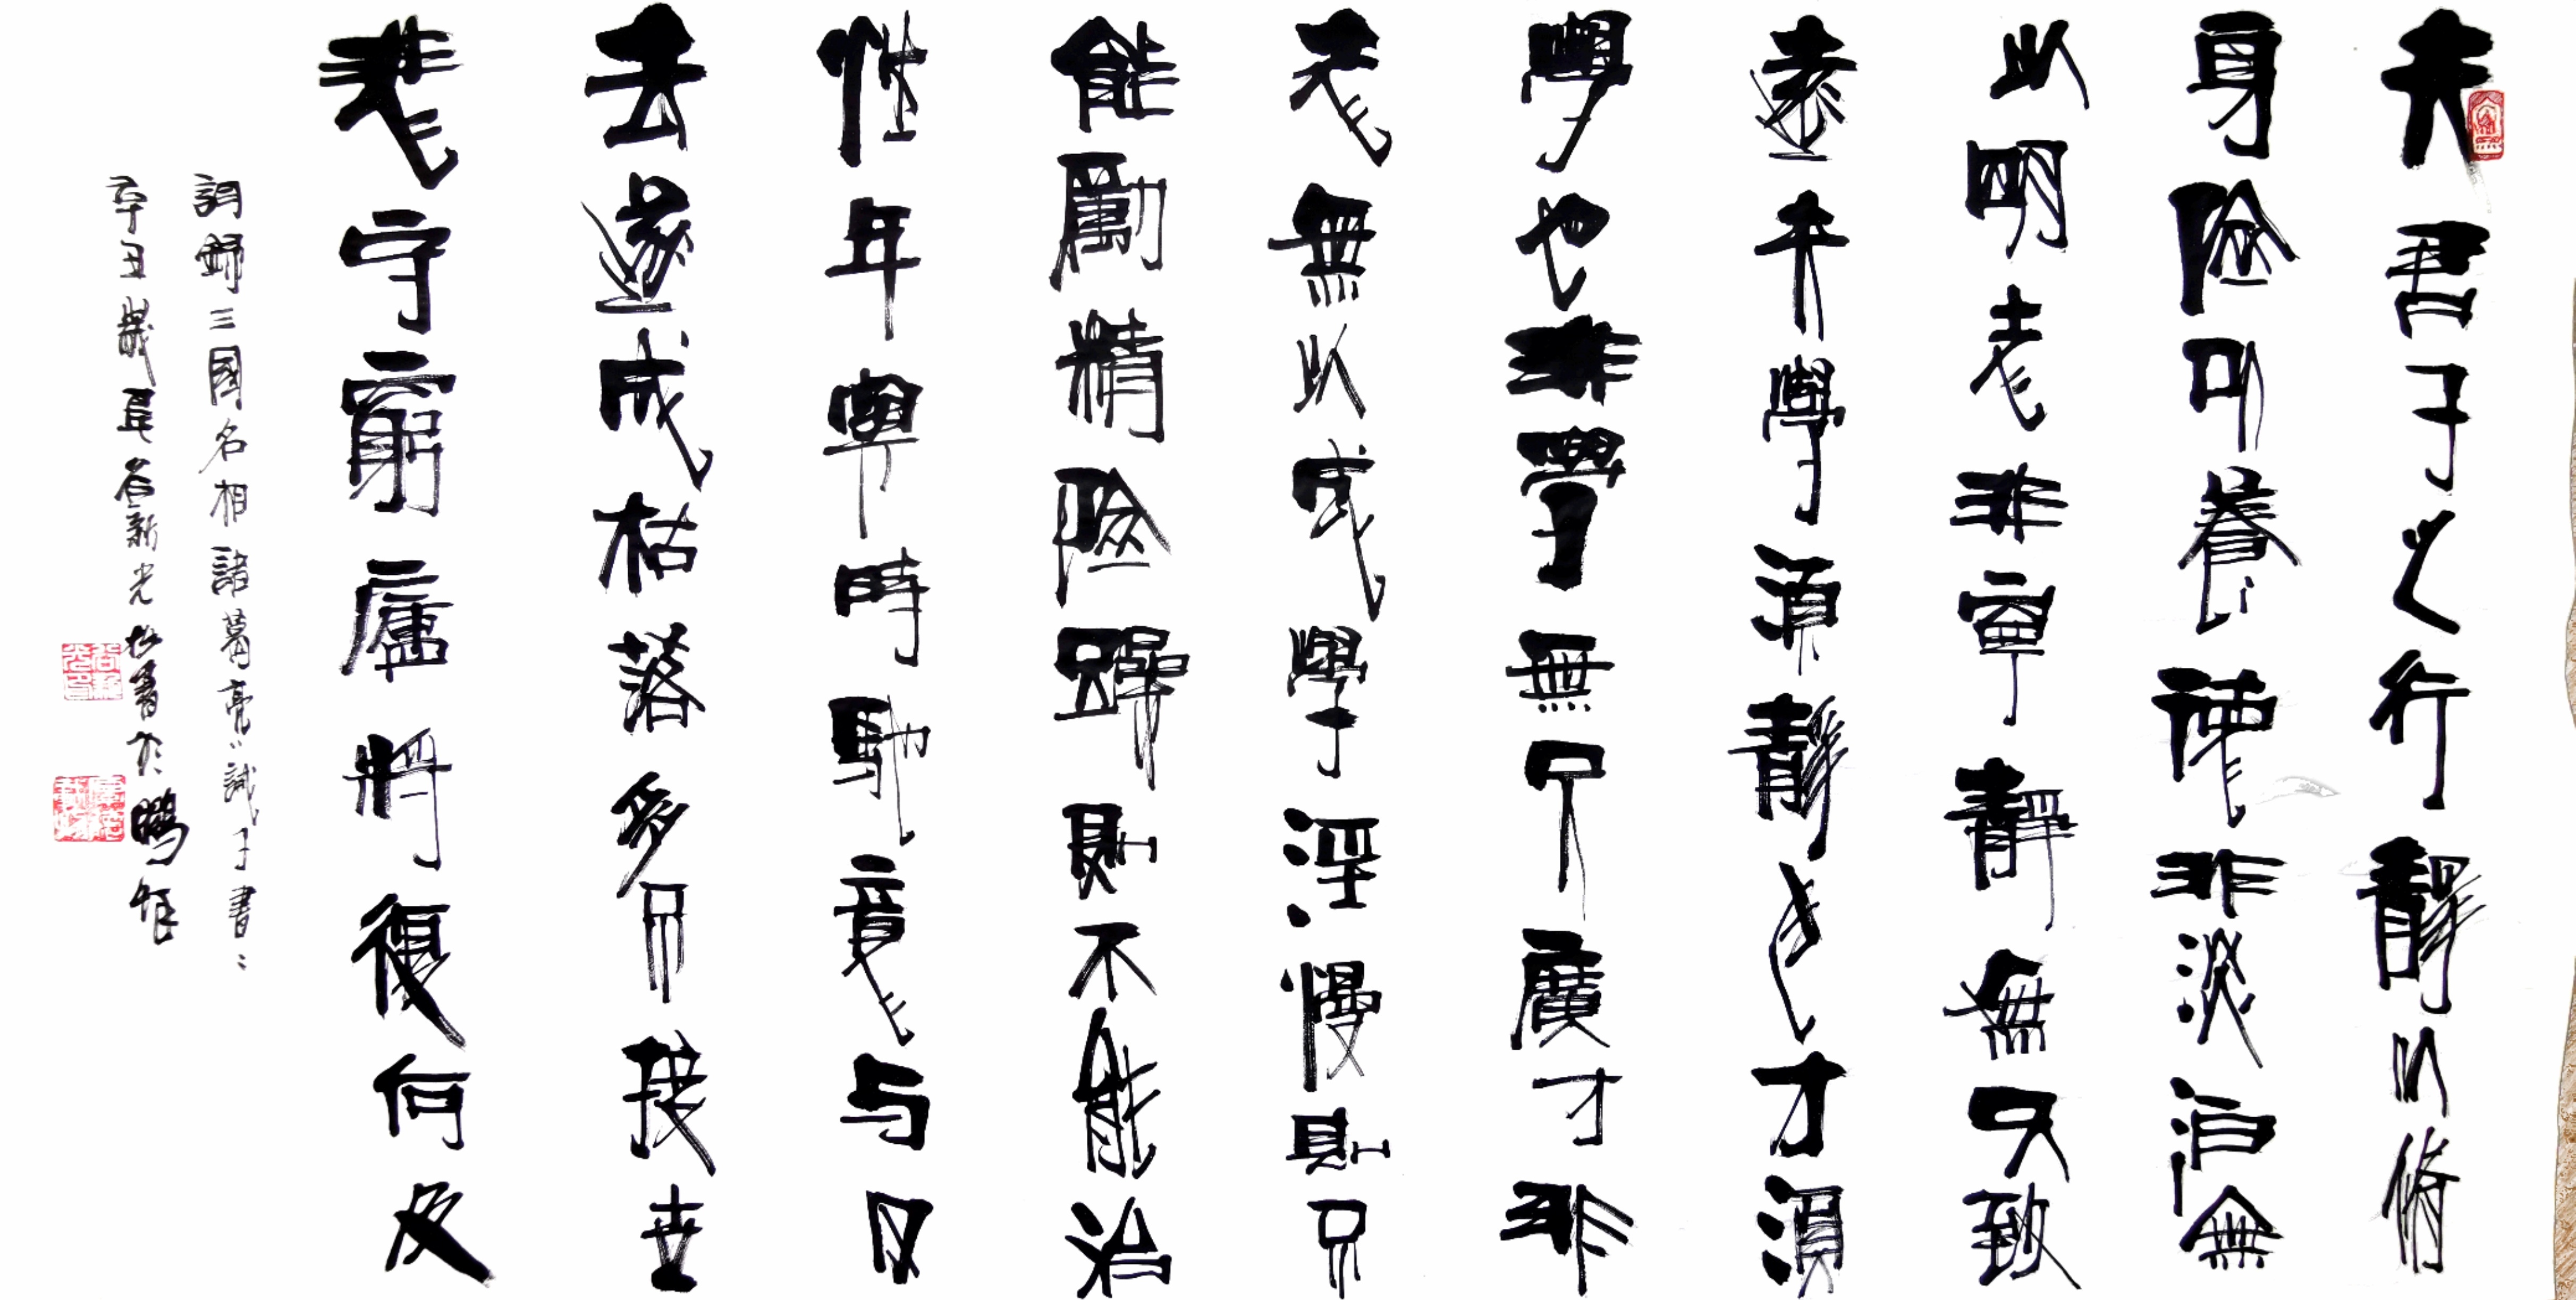 中国大众文化学会名人书画艺术发展委员会——谷新光